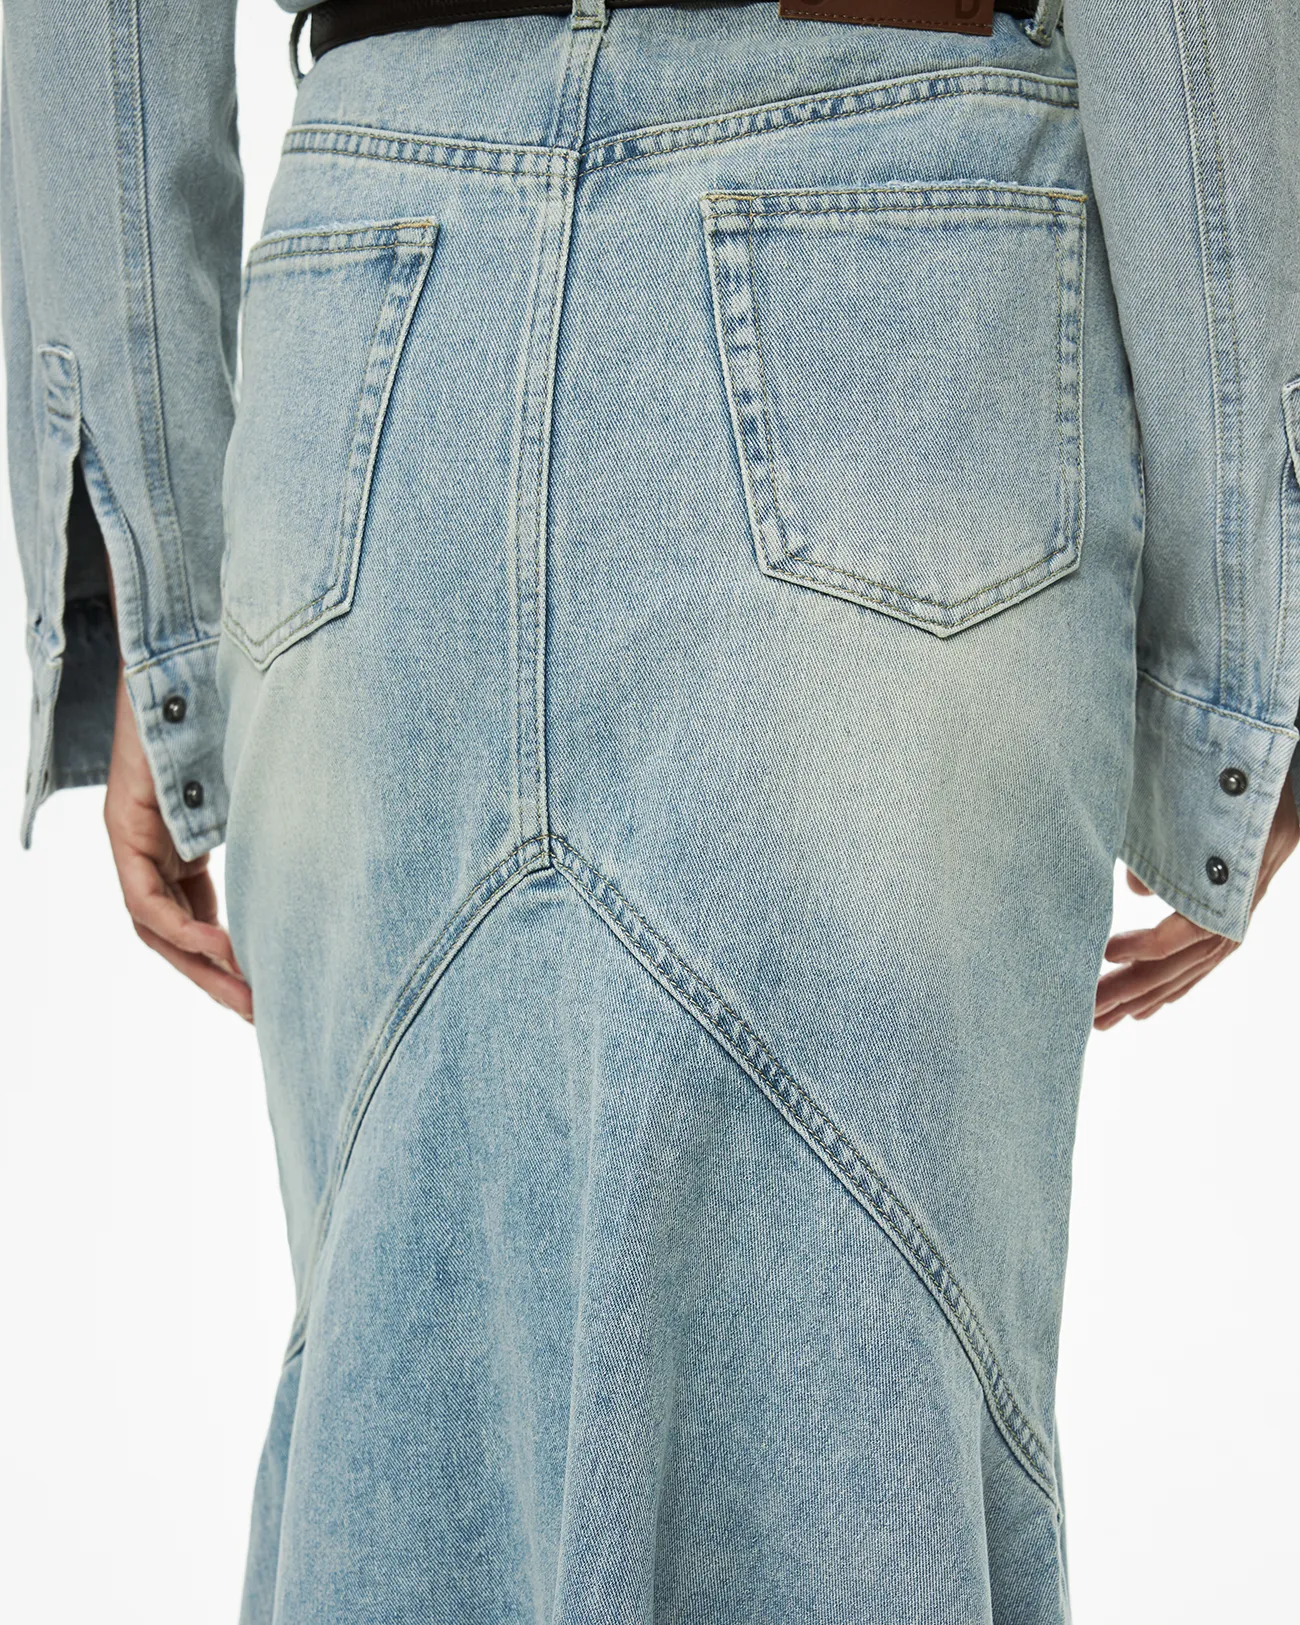 Юбка джинсовая миди со складками голубого цвета